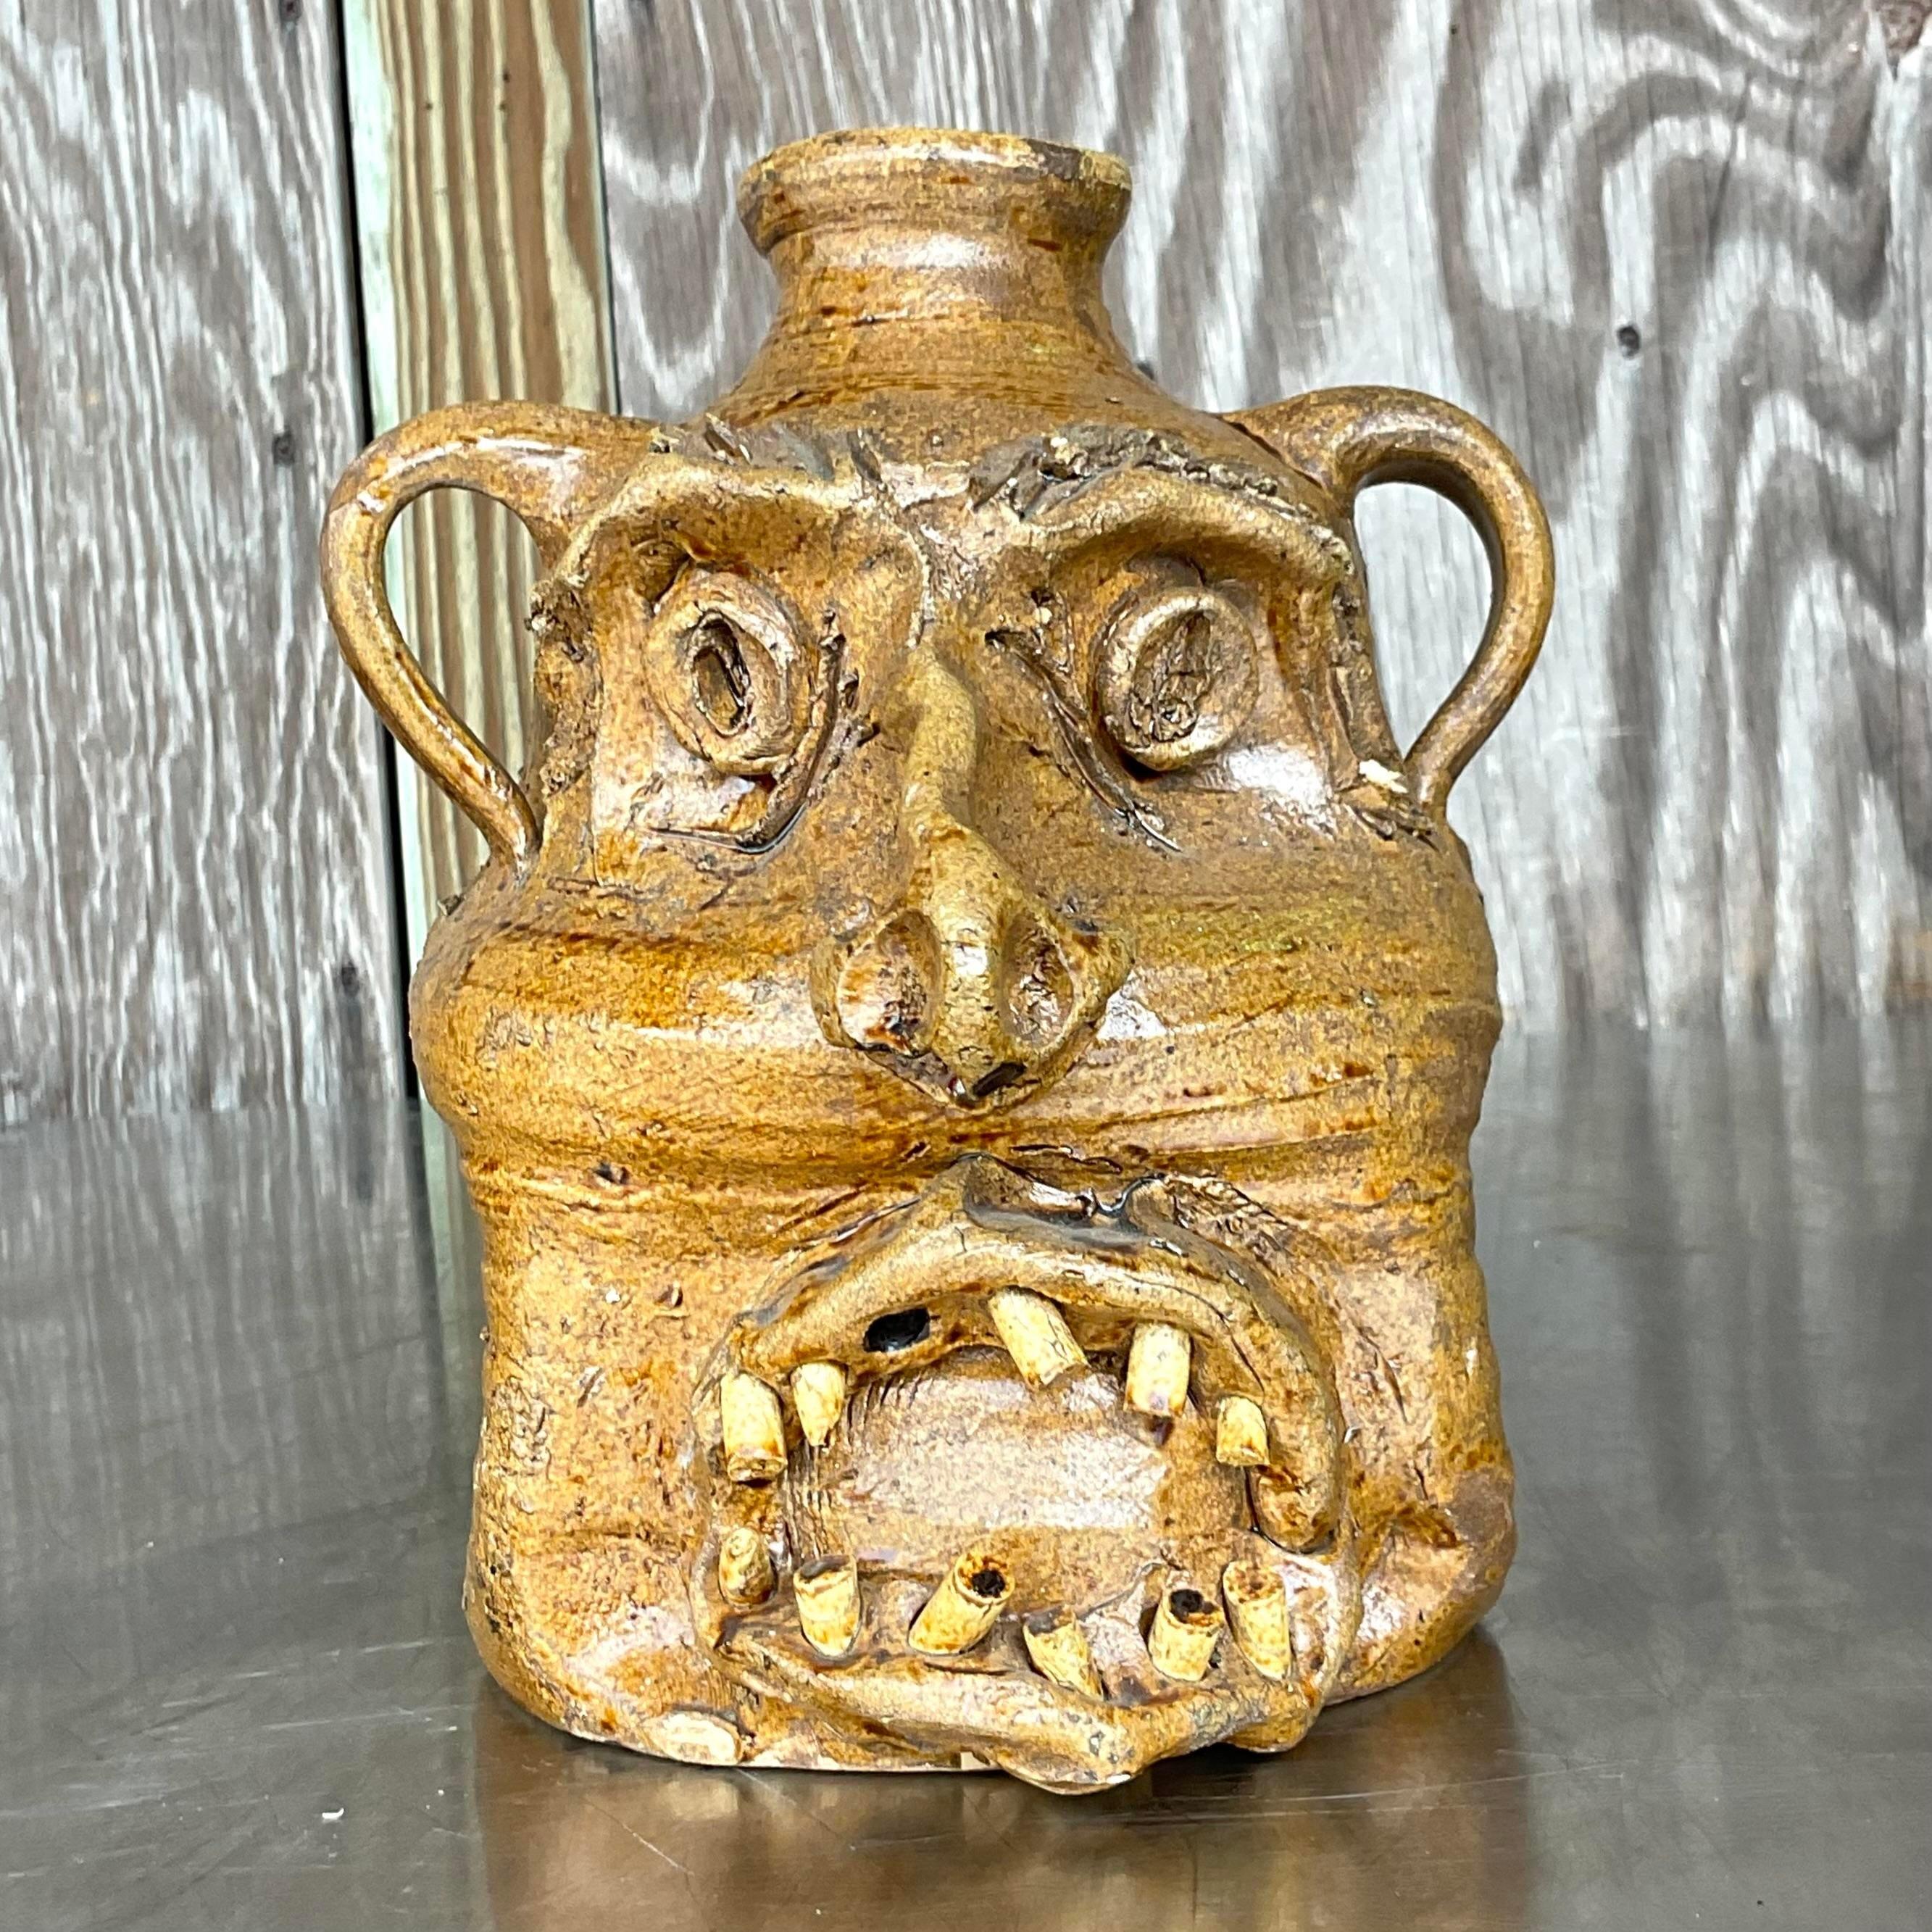 Peppen Sie Ihre Einrichtung mit diesem einzigartigen Vintage Rustic Studio Pottery Two-Faced Jug auf, der den Geist amerikanischer Handwerkskunst verkörpert. Das von einem erfahrenen Künstler handgefertigte, einzigartige Design spiegelt die